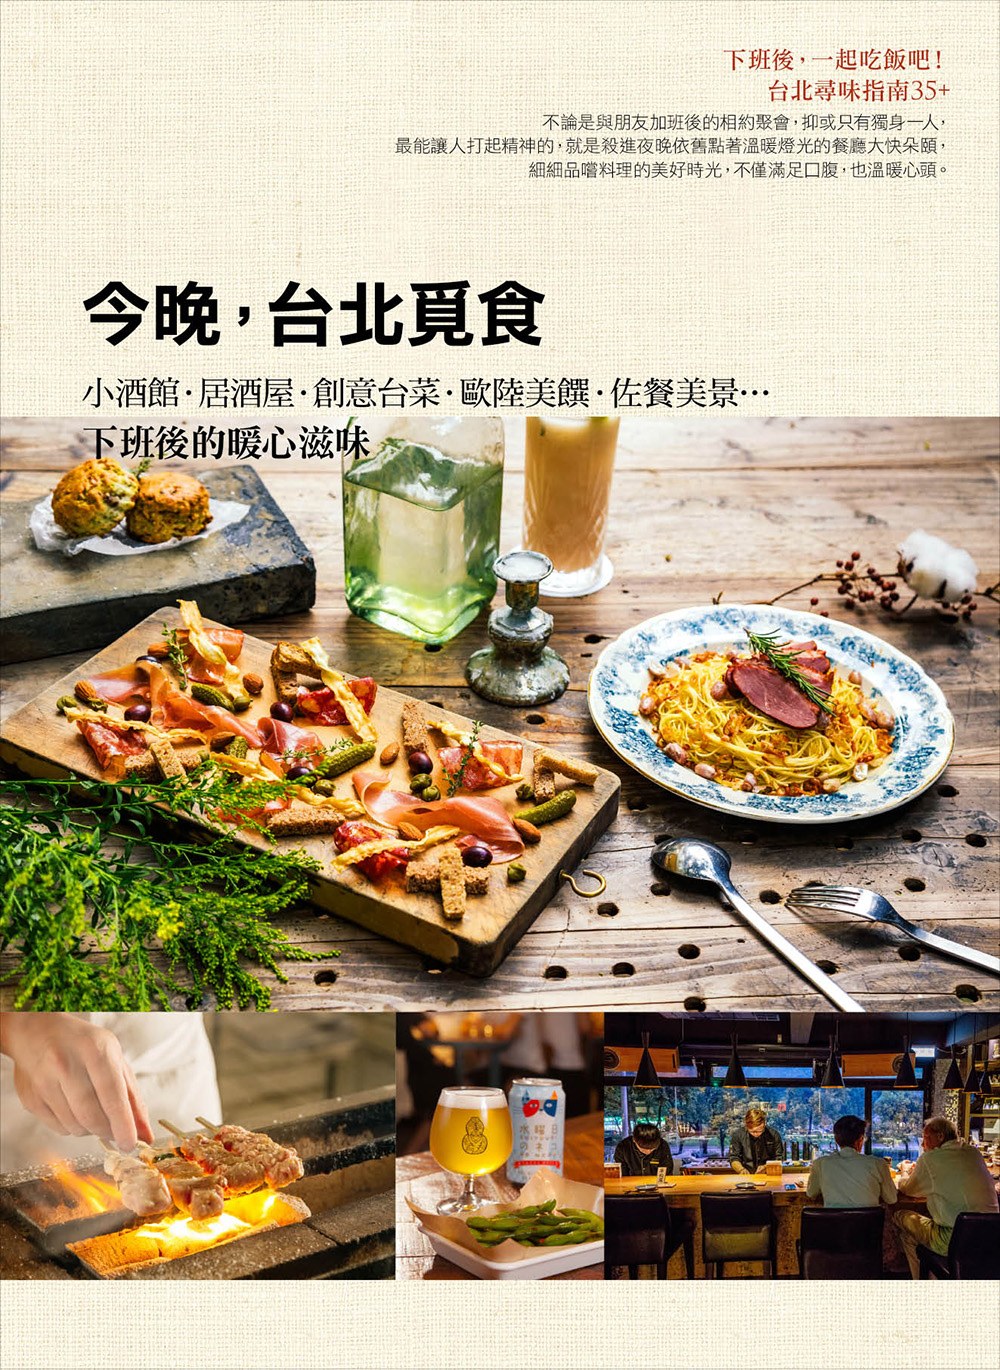 今晚，台北覓食：小酒館‧居酒屋‧創意台菜‧歐陸美饌‧佐餐美景…下班後的暖心滋味